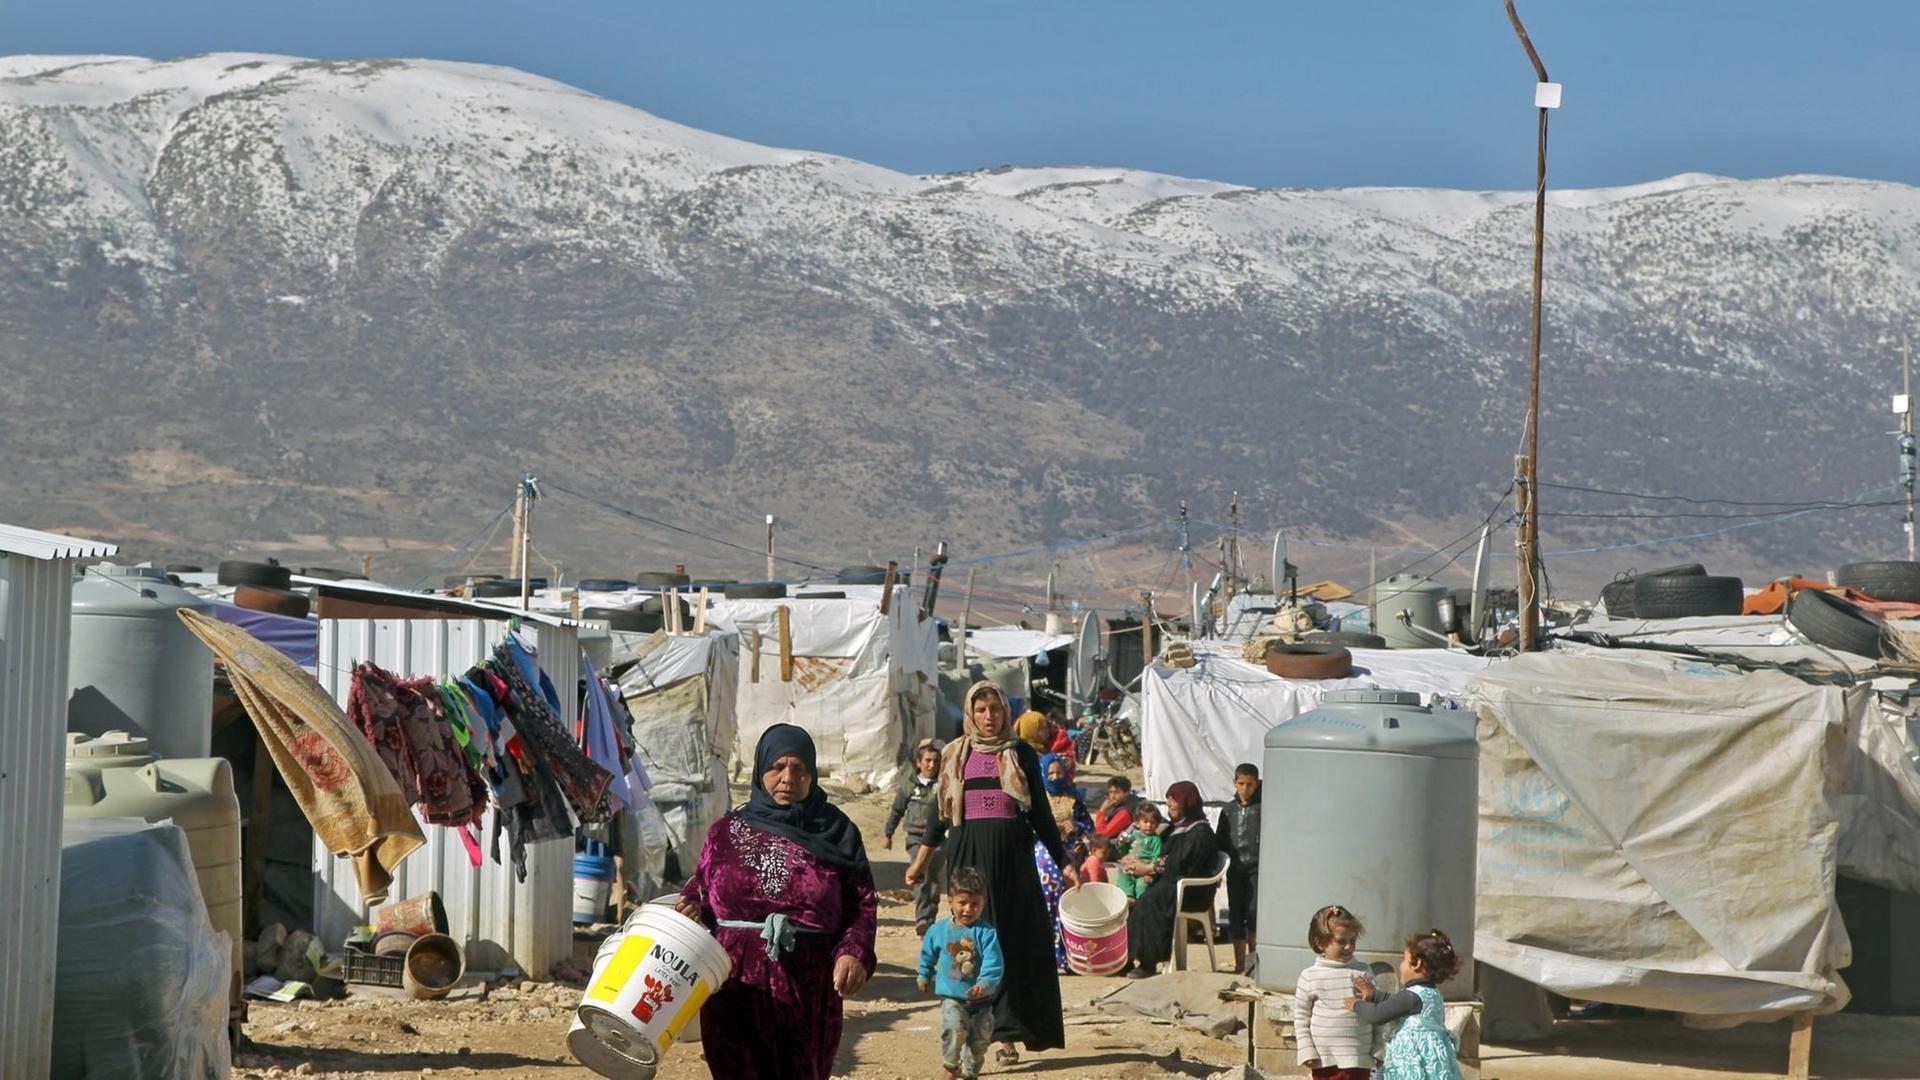 ibanon, Mardsch: Syrische Flüchtlinge gehen durch ein Flüchtlingslager in der Bekaa-Ebene.